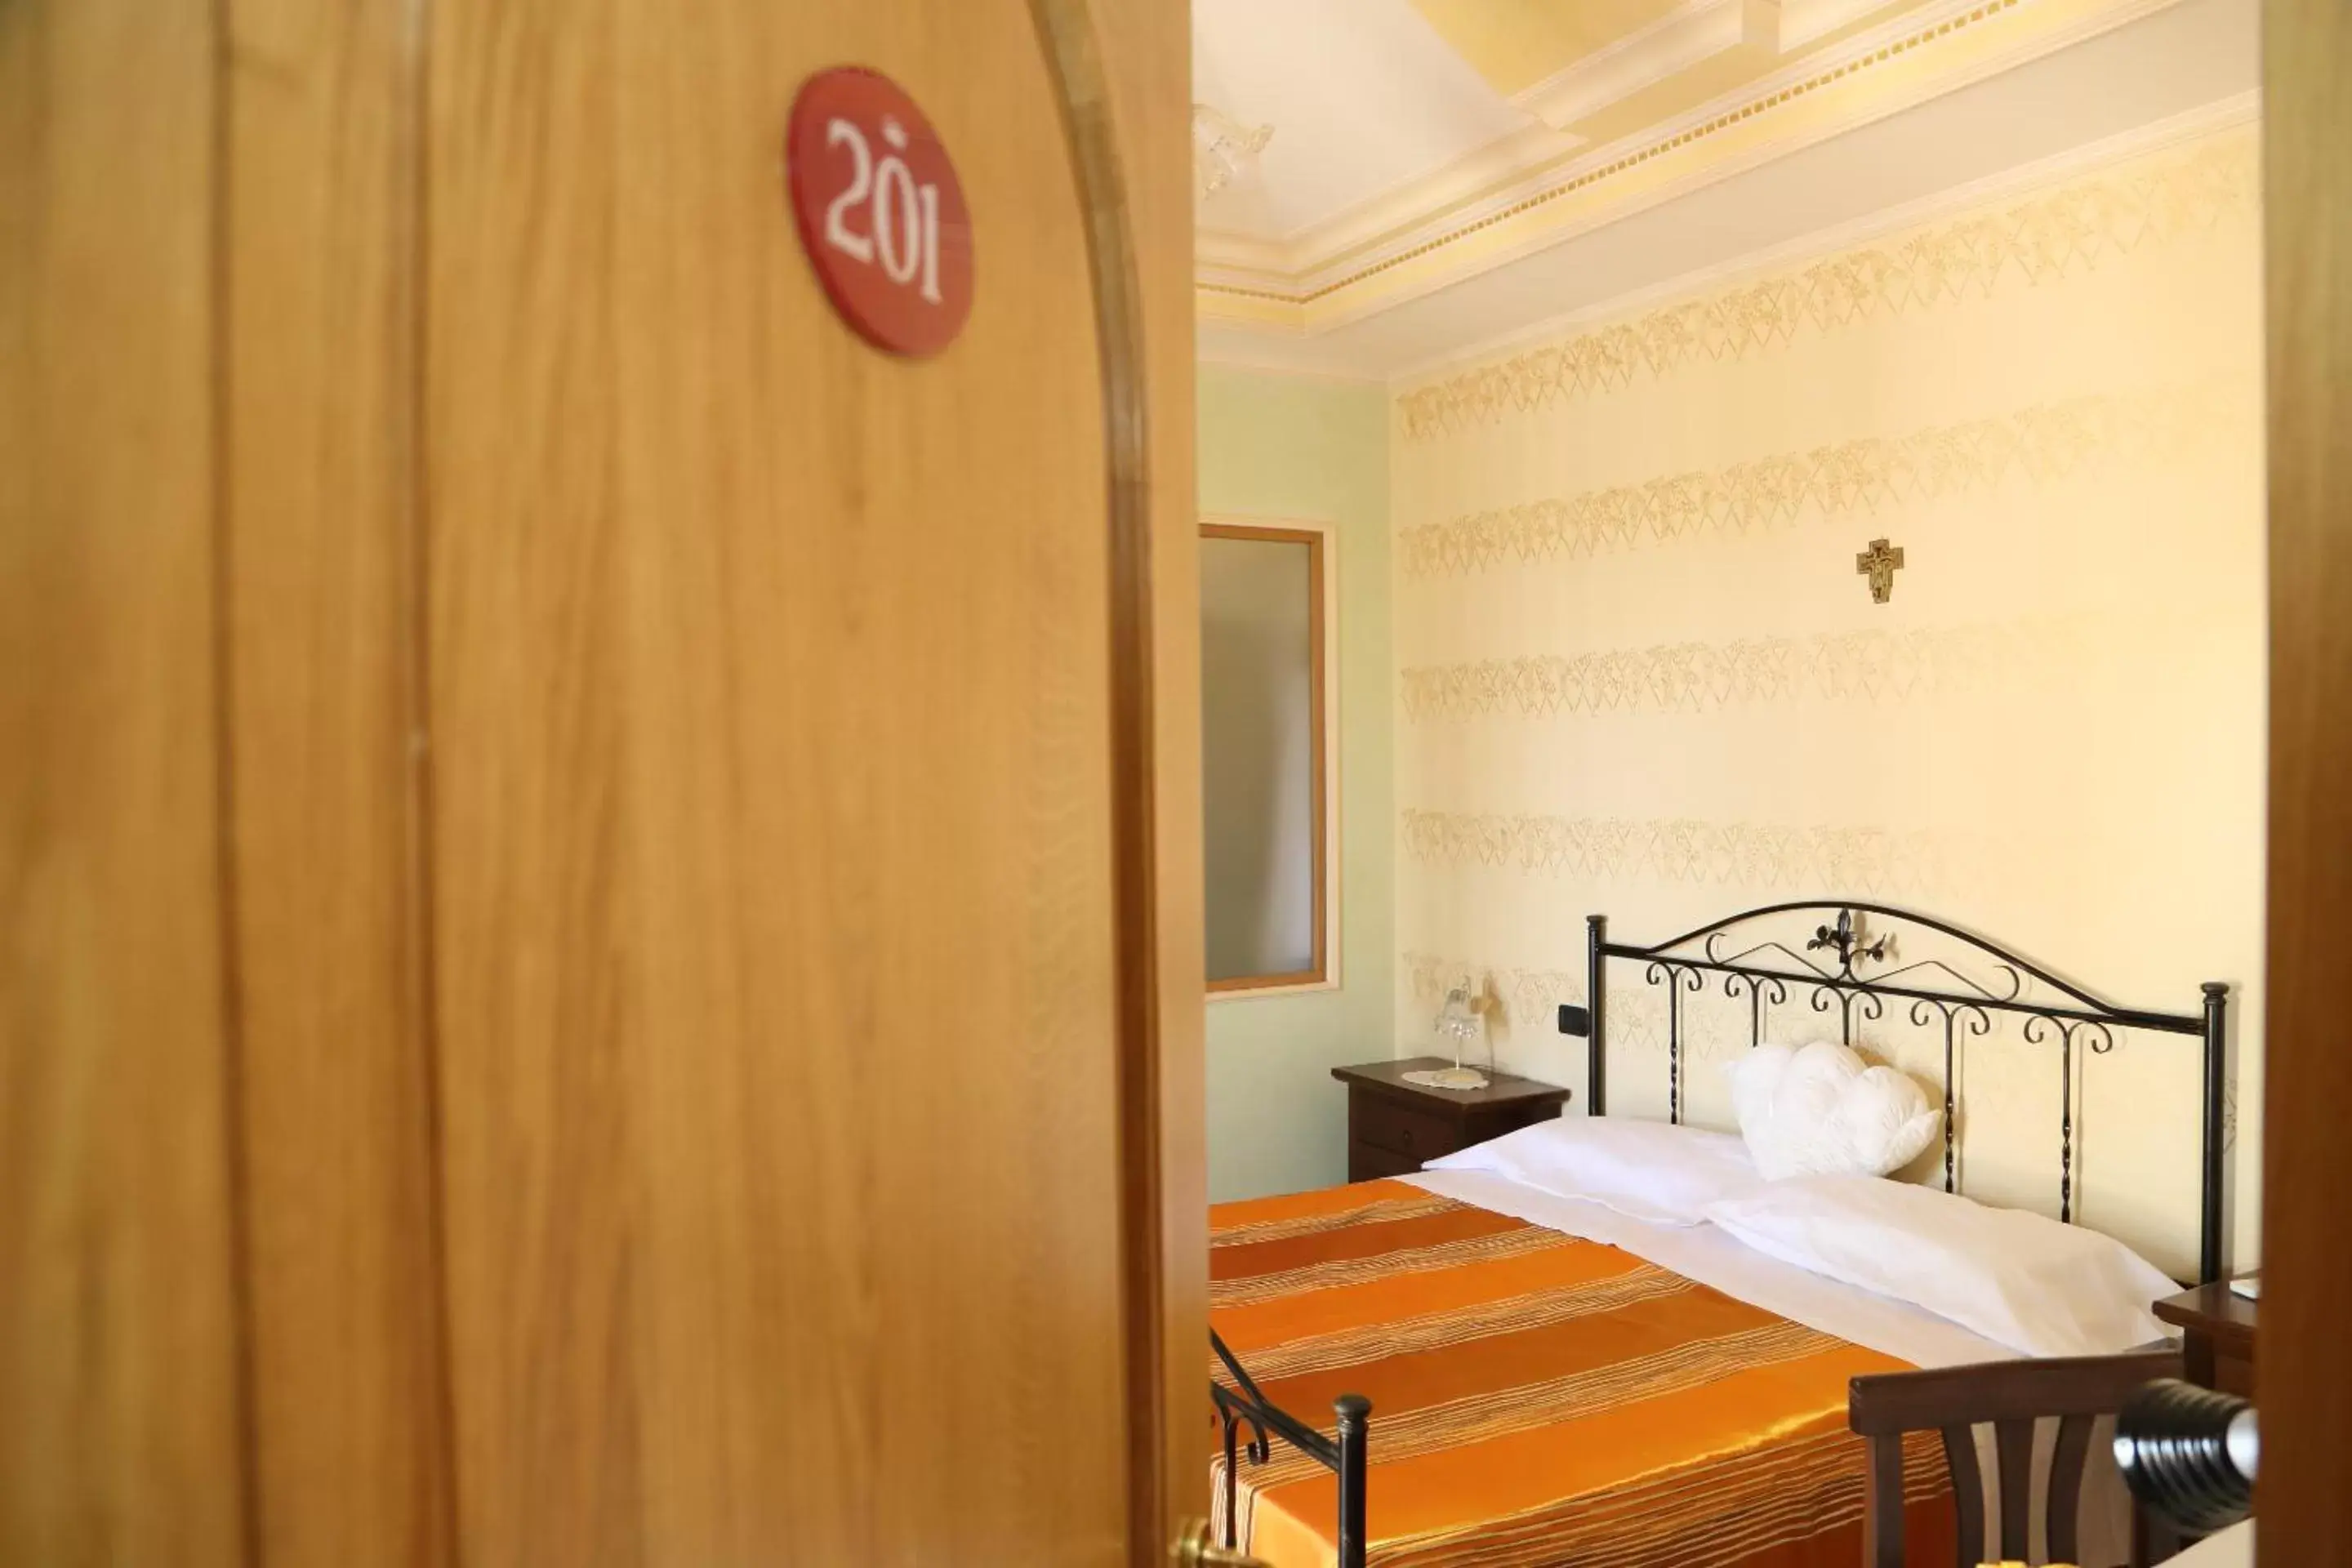 Bed, Room Photo in Villa Manno